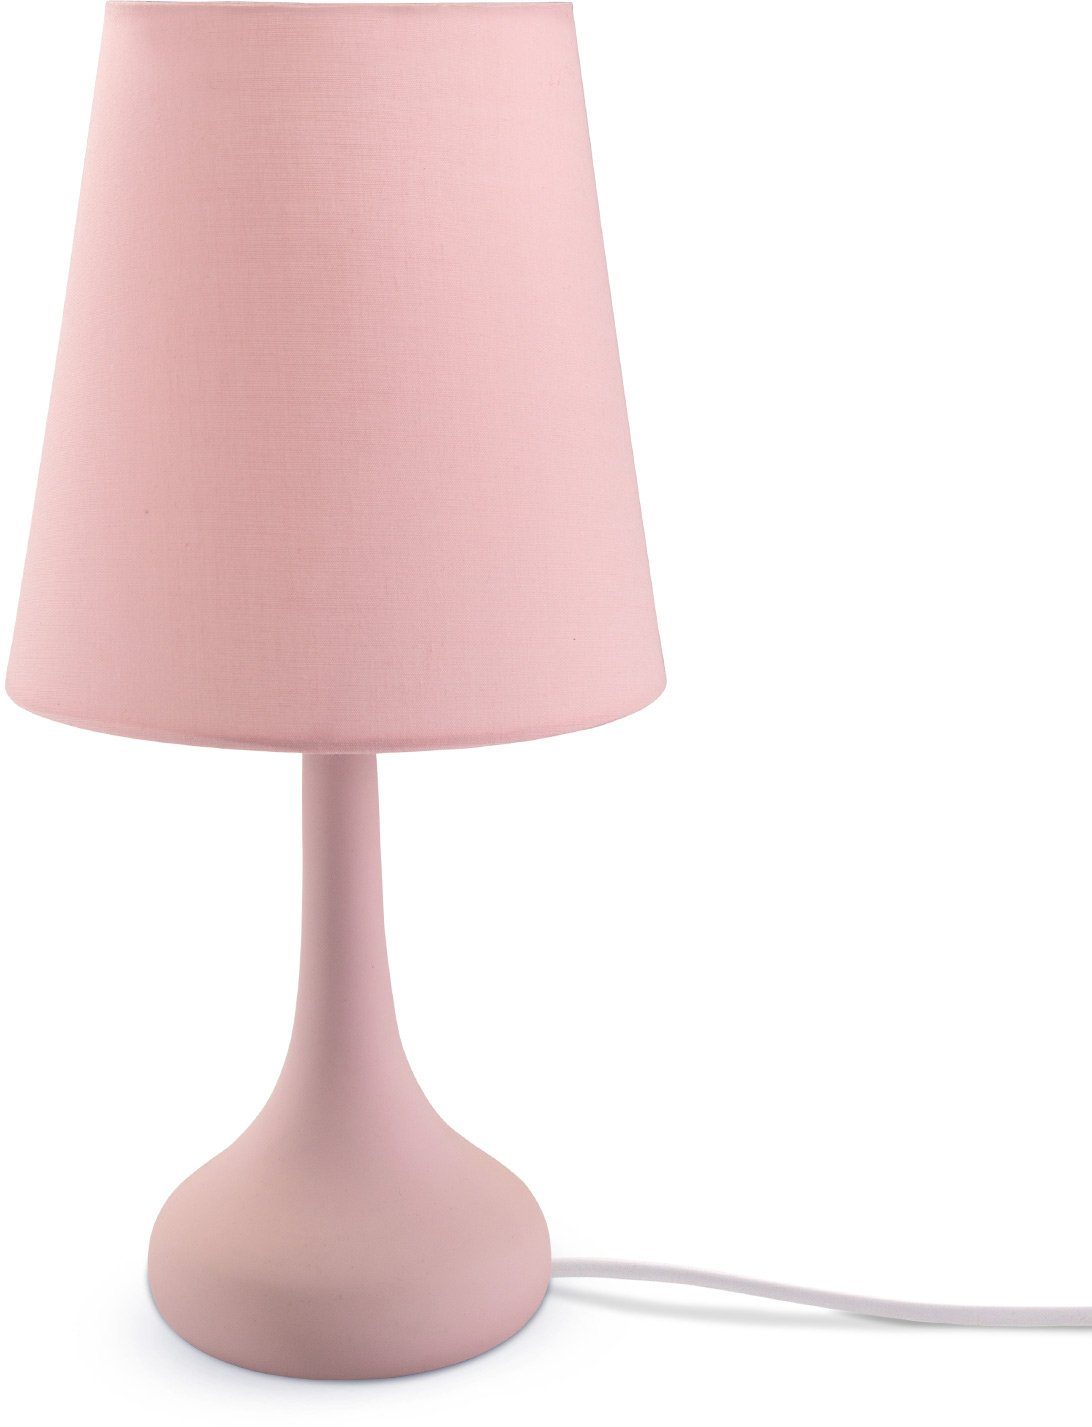 ohne Tischleuchte E14 HELA, LED Modern Lampe, Wohnzimmer u. Für Paco pink Tischleuchte Kinderzimmer Home Leuchtmittel,